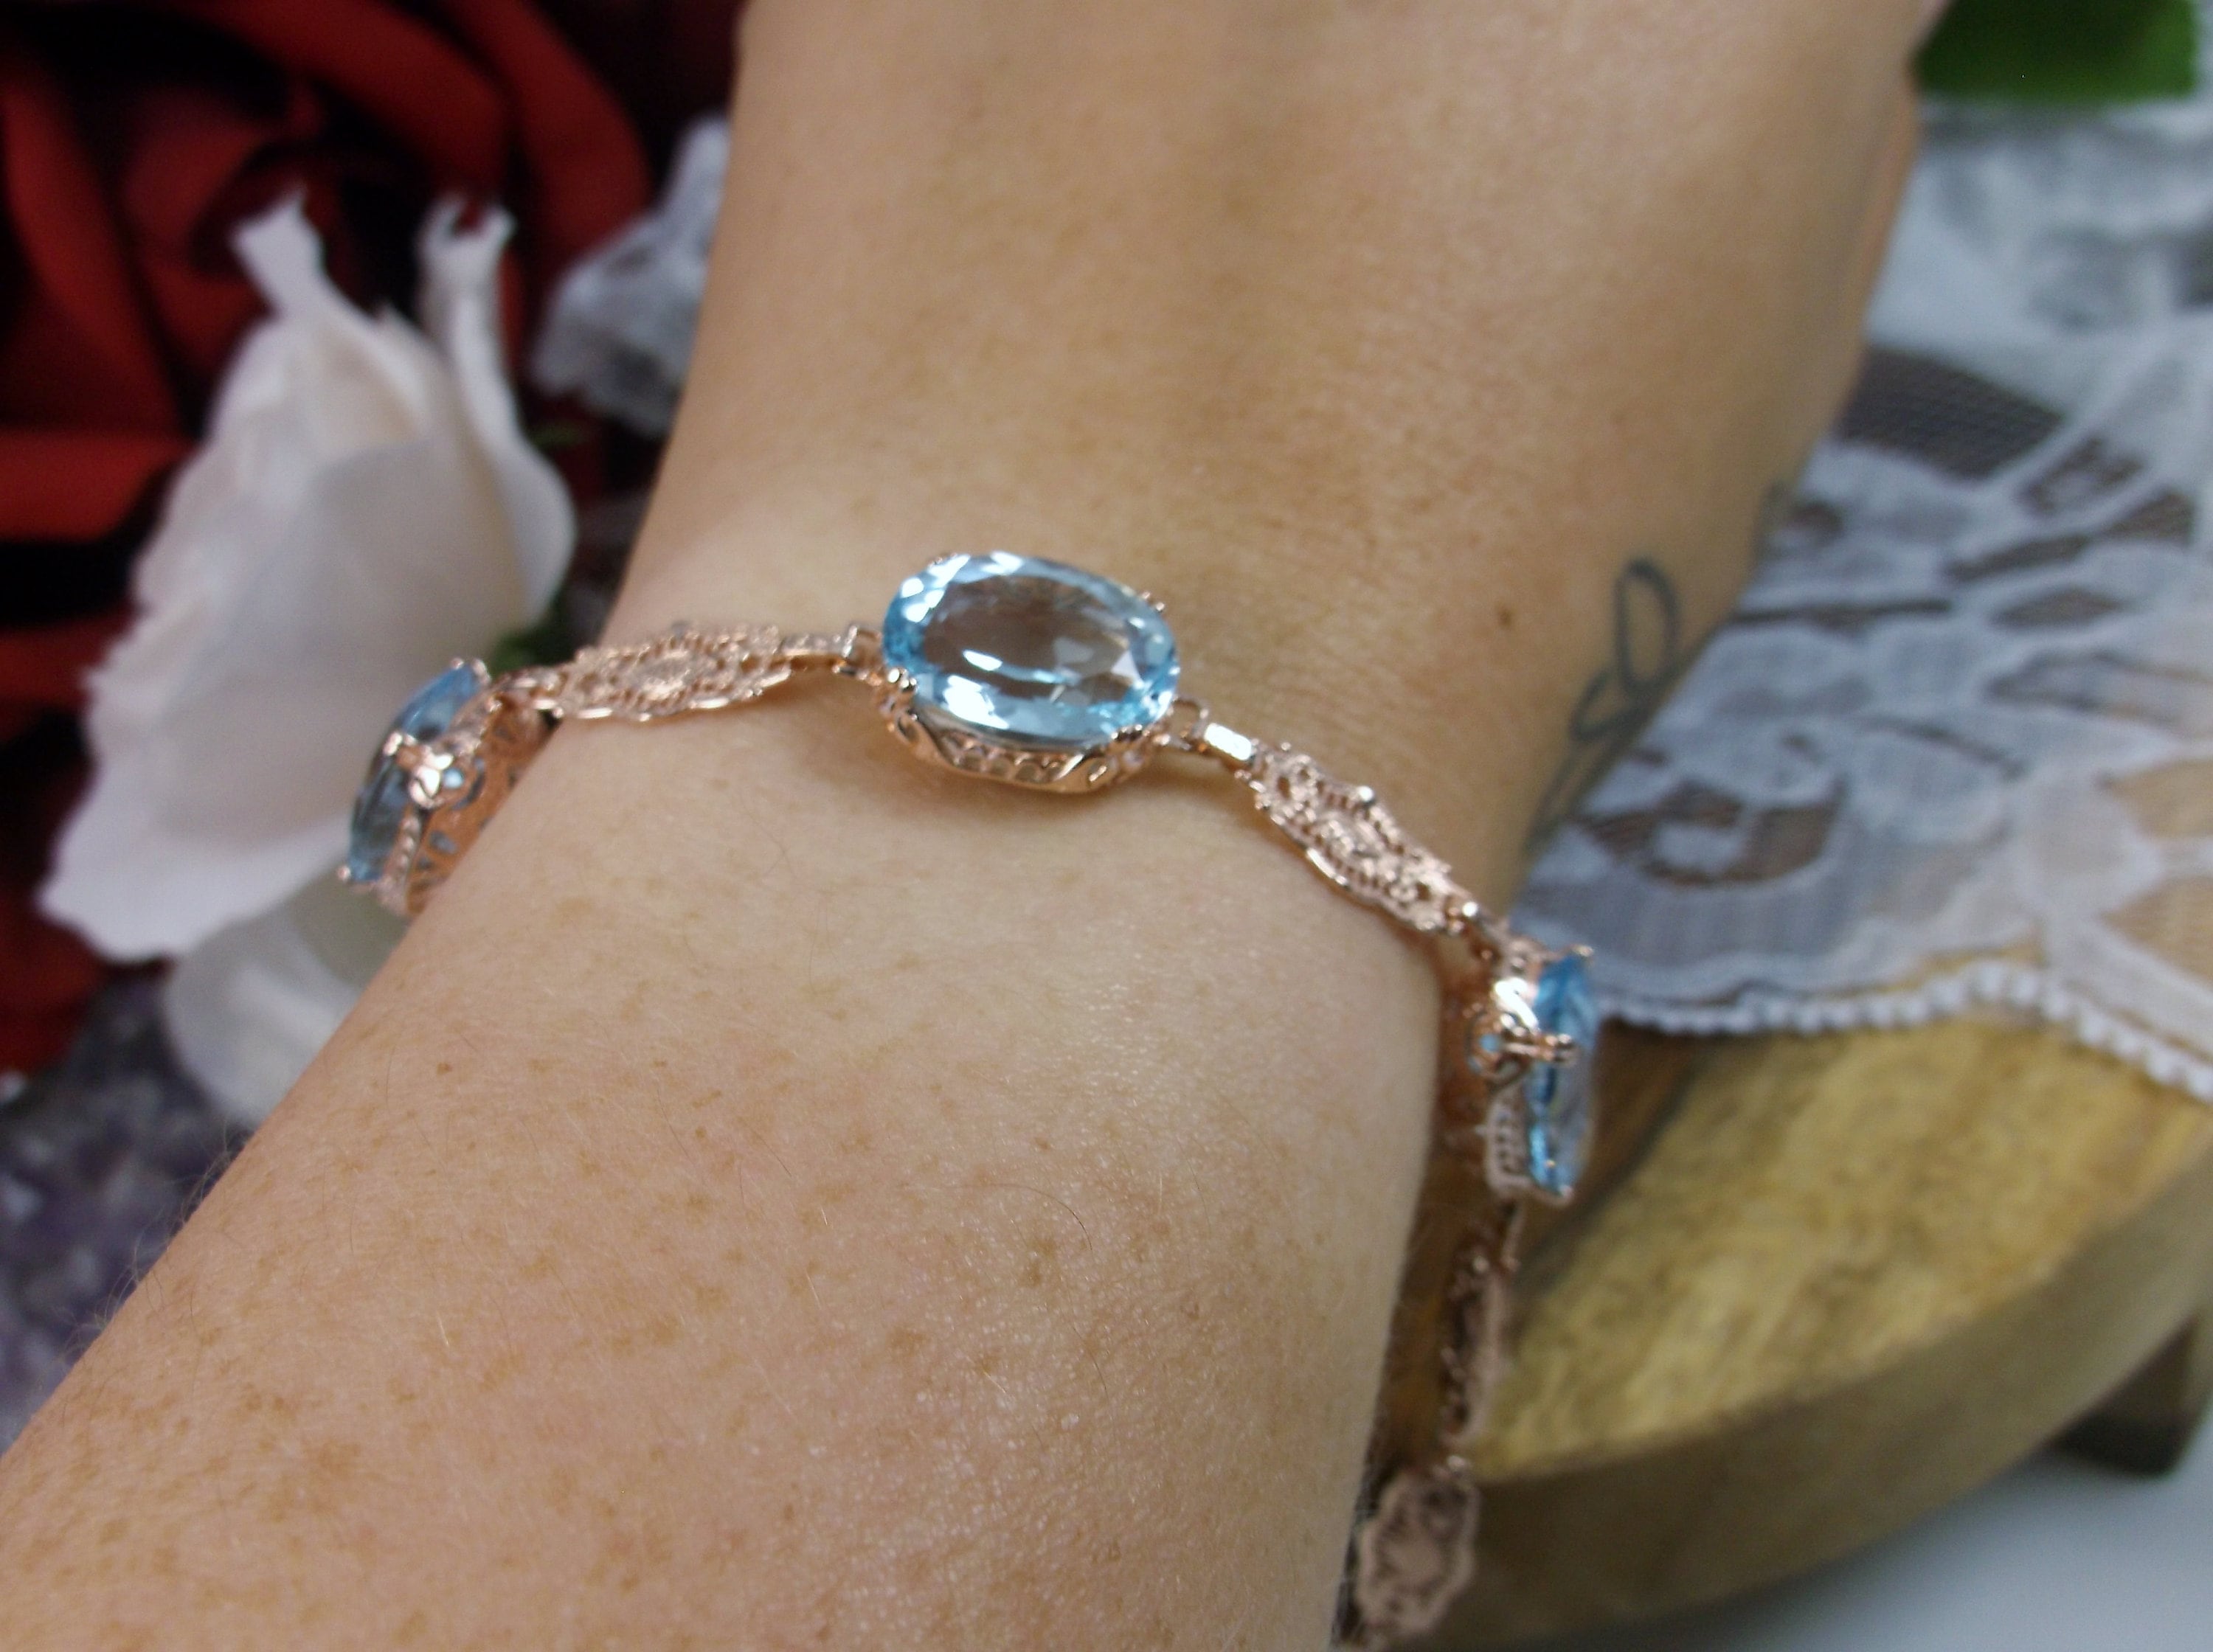 Blue Topaz Bracelet In Gold With Diamonds (4 Ctw)